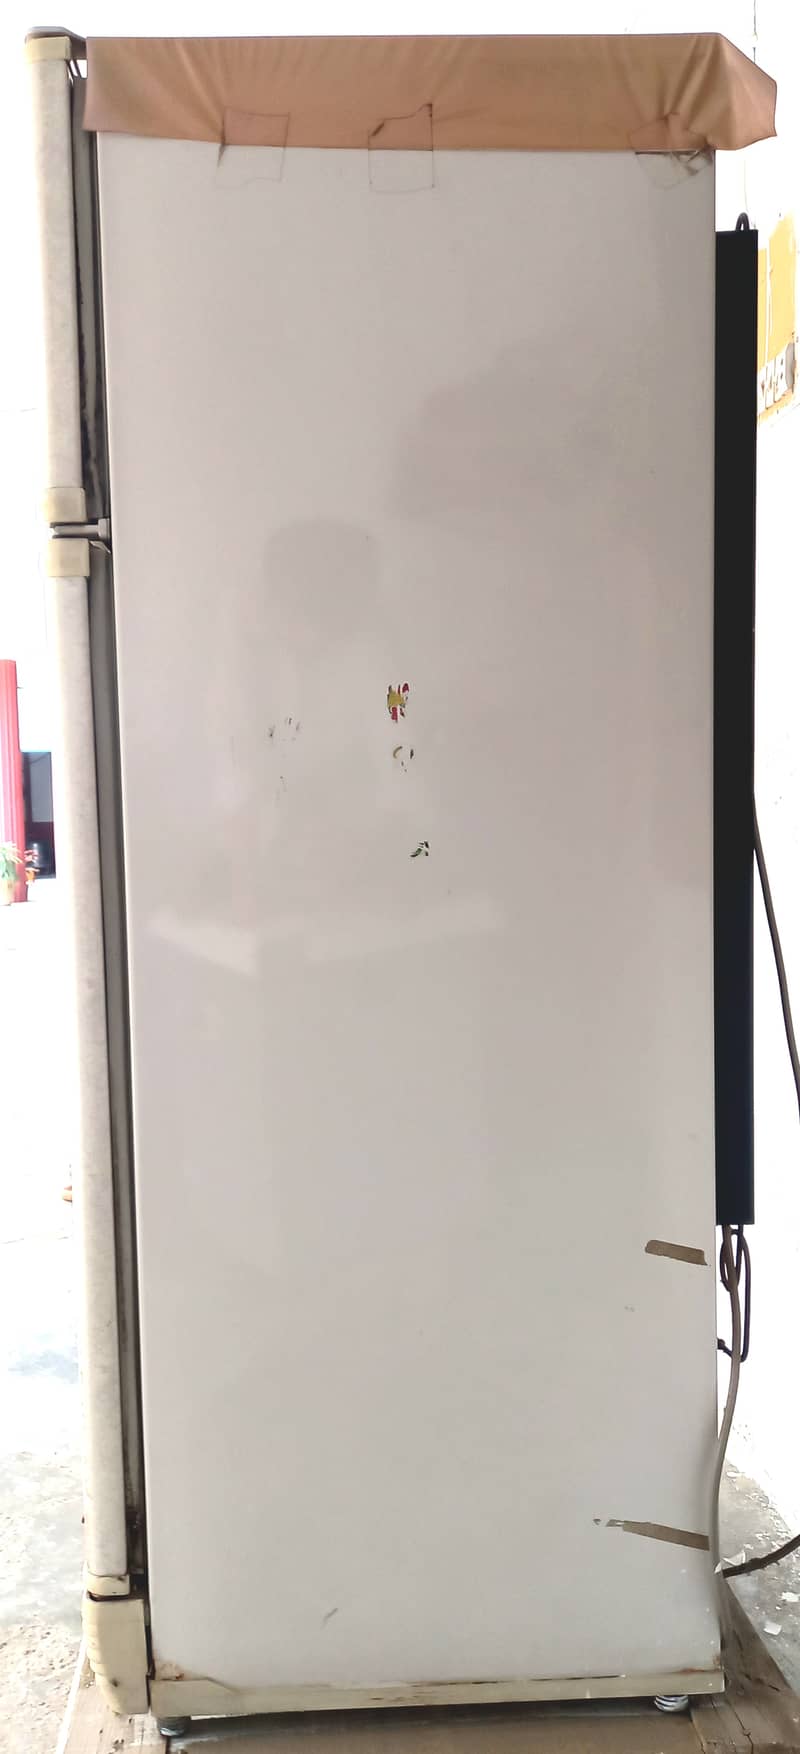 PEL Refrigerator 3